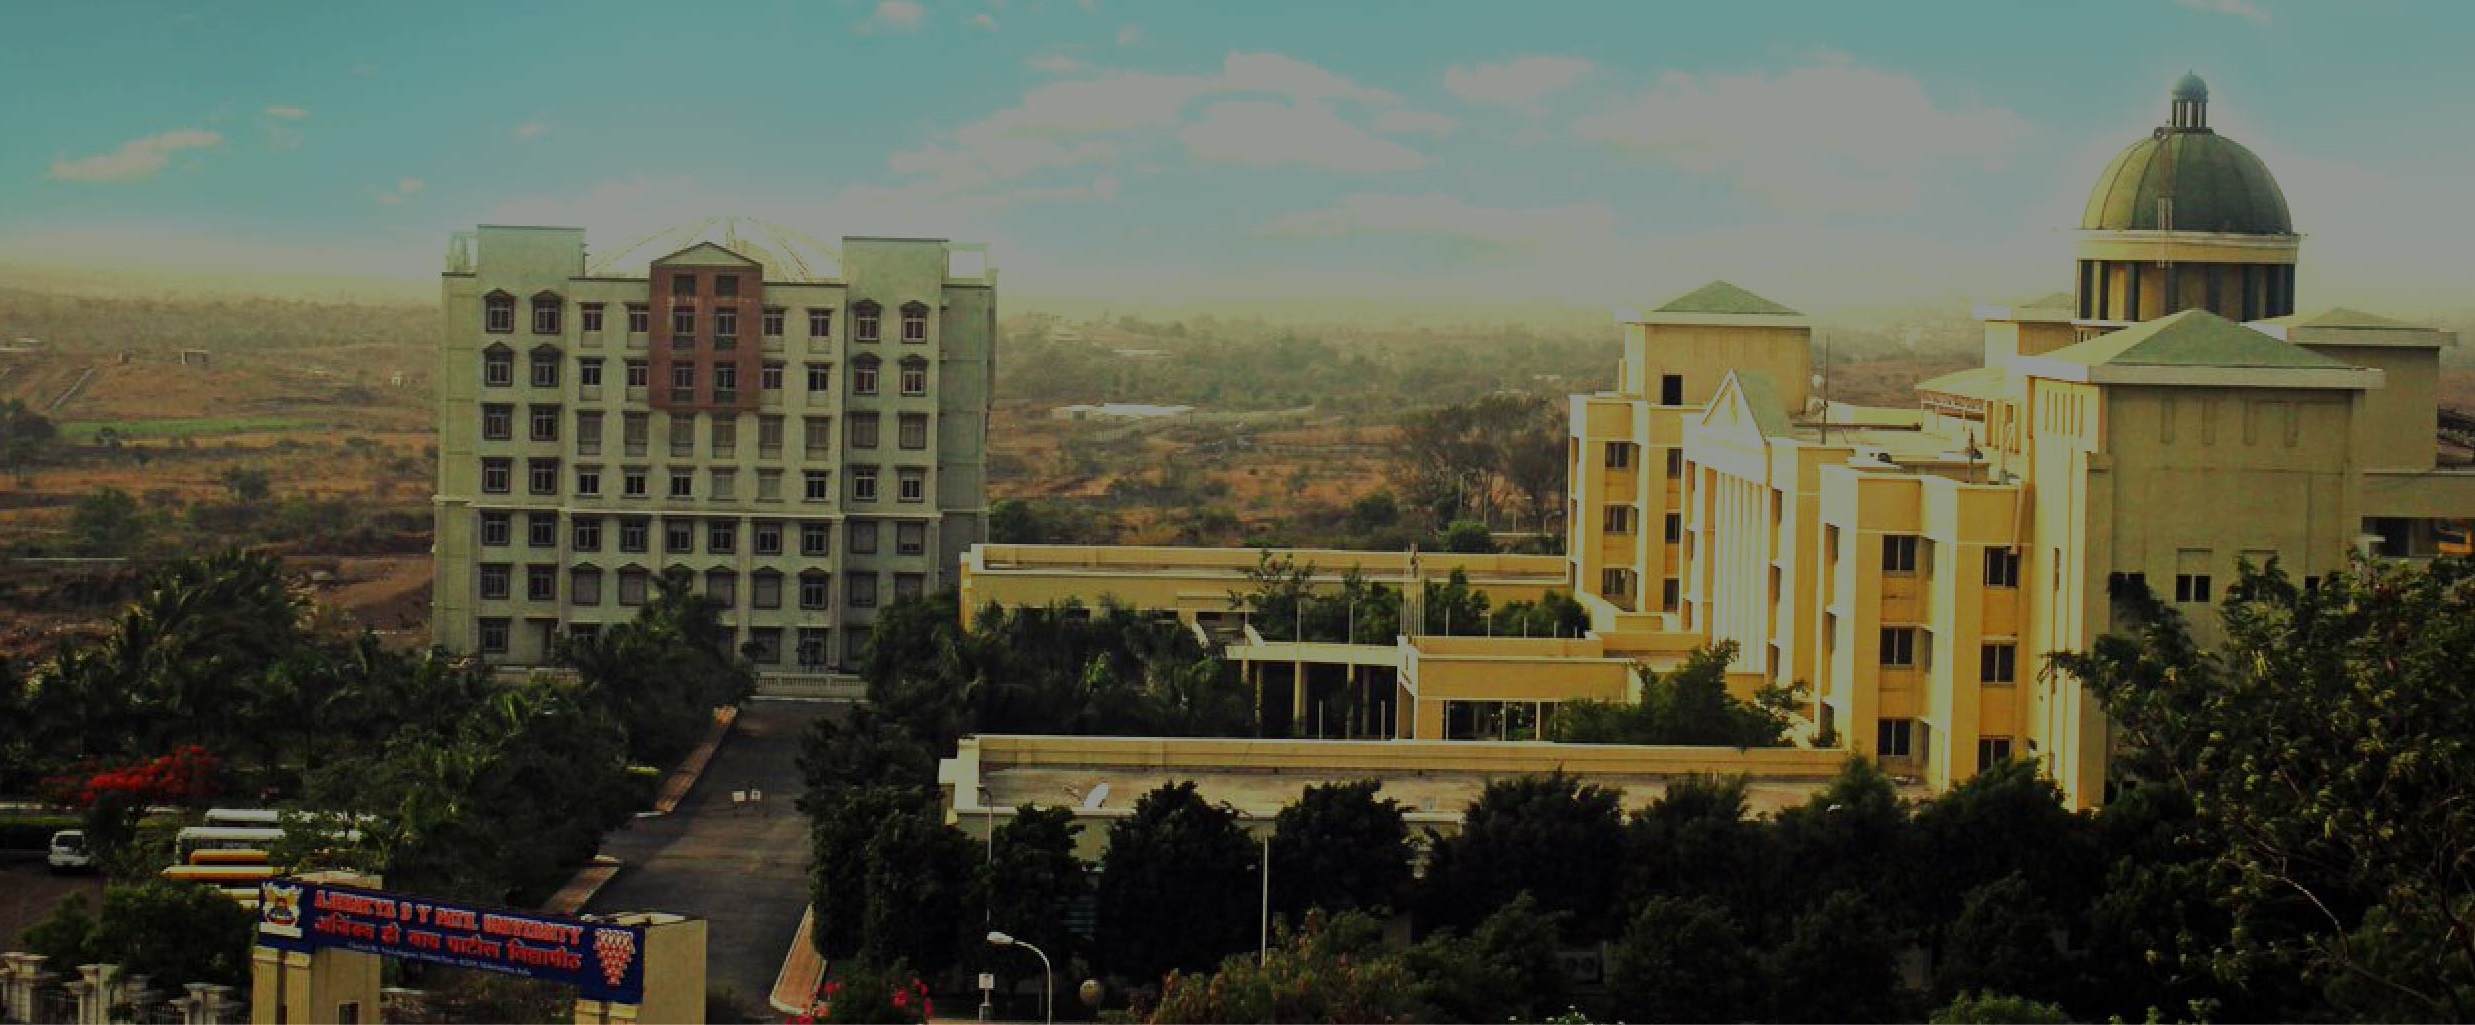 Institute of Logistics and Aviation Management, Bengaluru Image